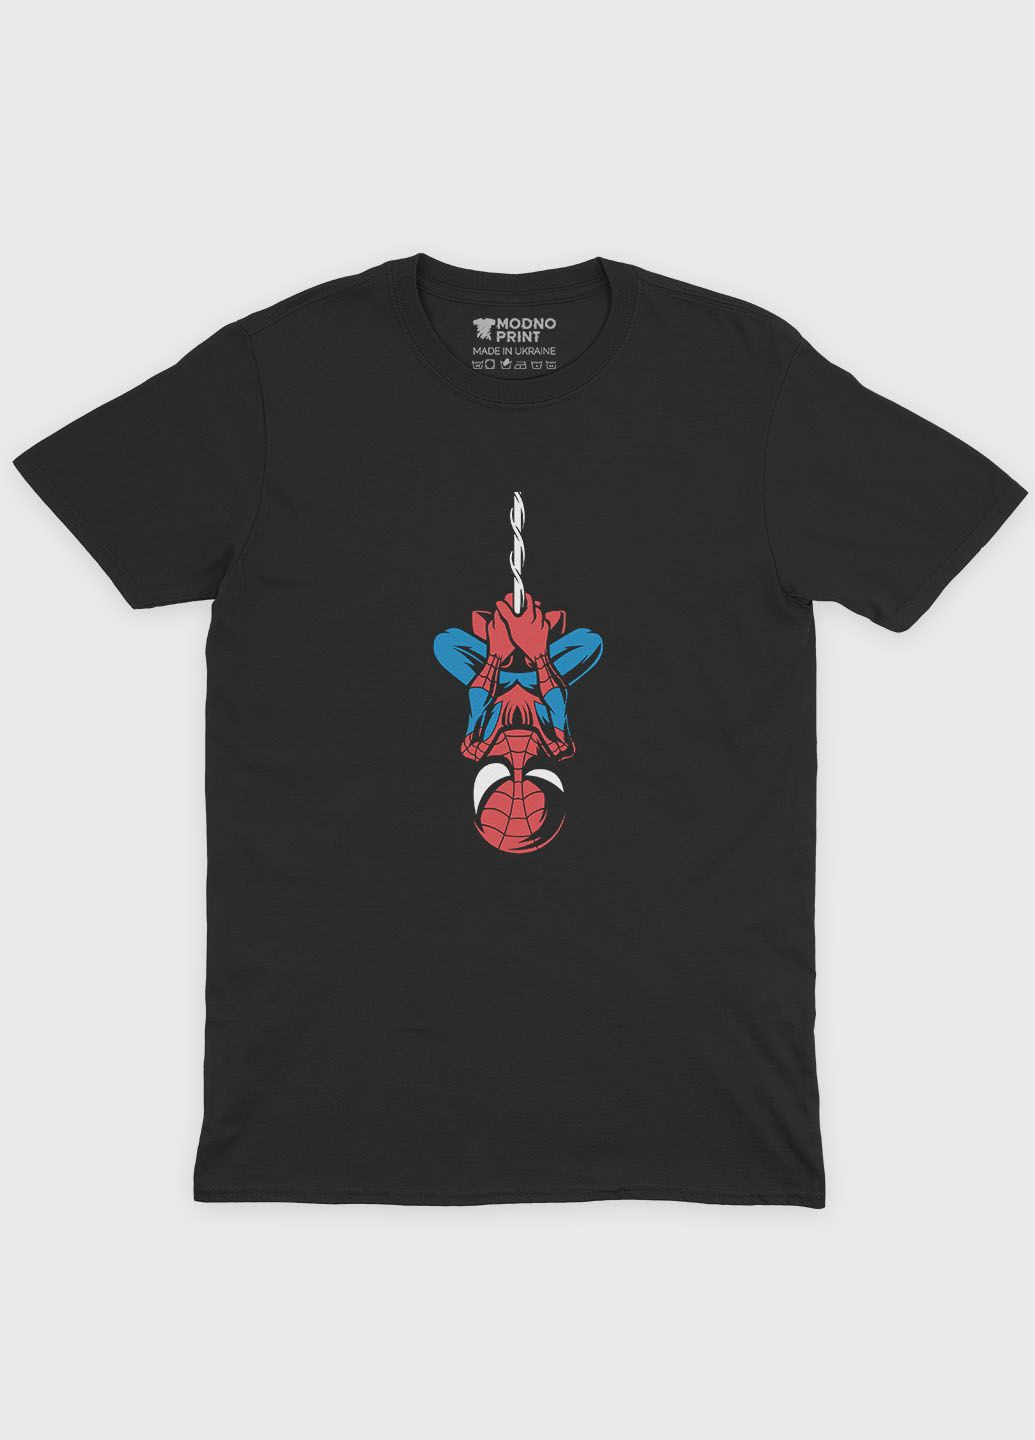 Черная демисезонная футболка для мальчика с принтом супергероя - человек-паук (ts001-1-bl-006-014-085-b) Modno